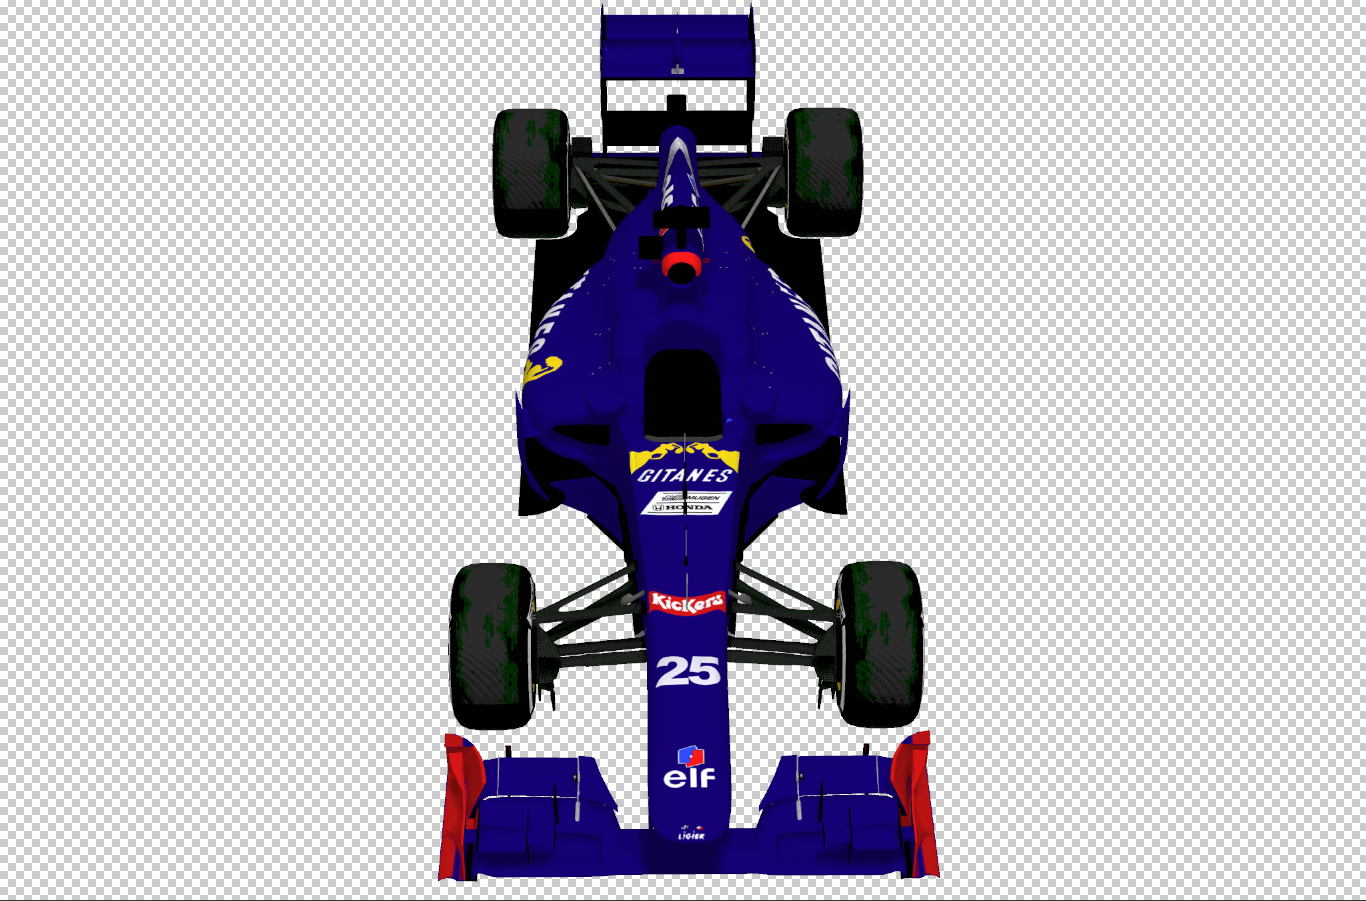 1995 Ligier Front.PNG